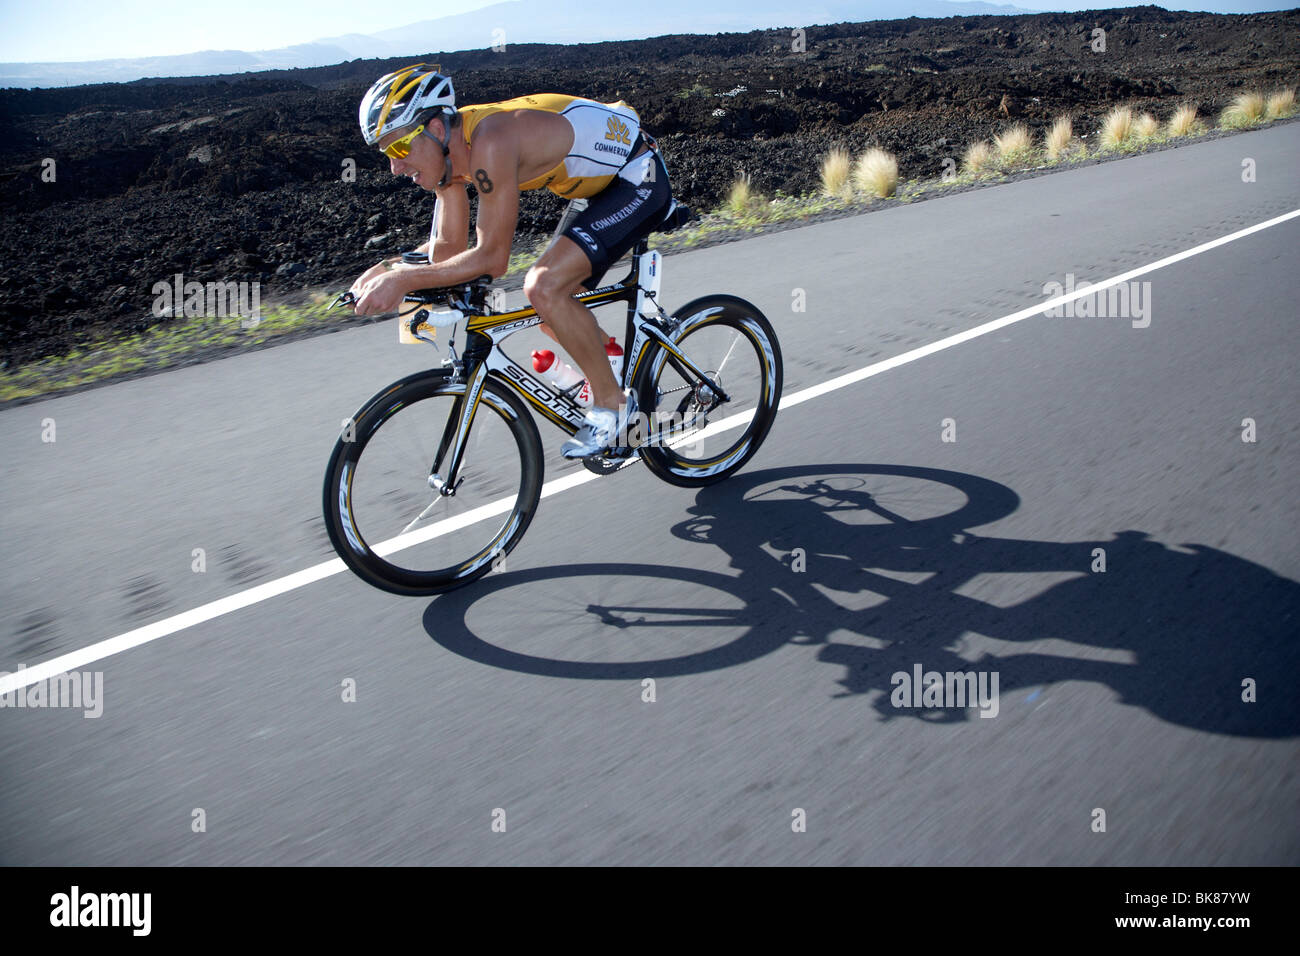 La Svizzera triatleta professionale Mathias Hecht sulla moto corso di Ironman Triathlon World Championship in Kona, Hawaii, STATI UNITI D'AMERICA Foto Stock